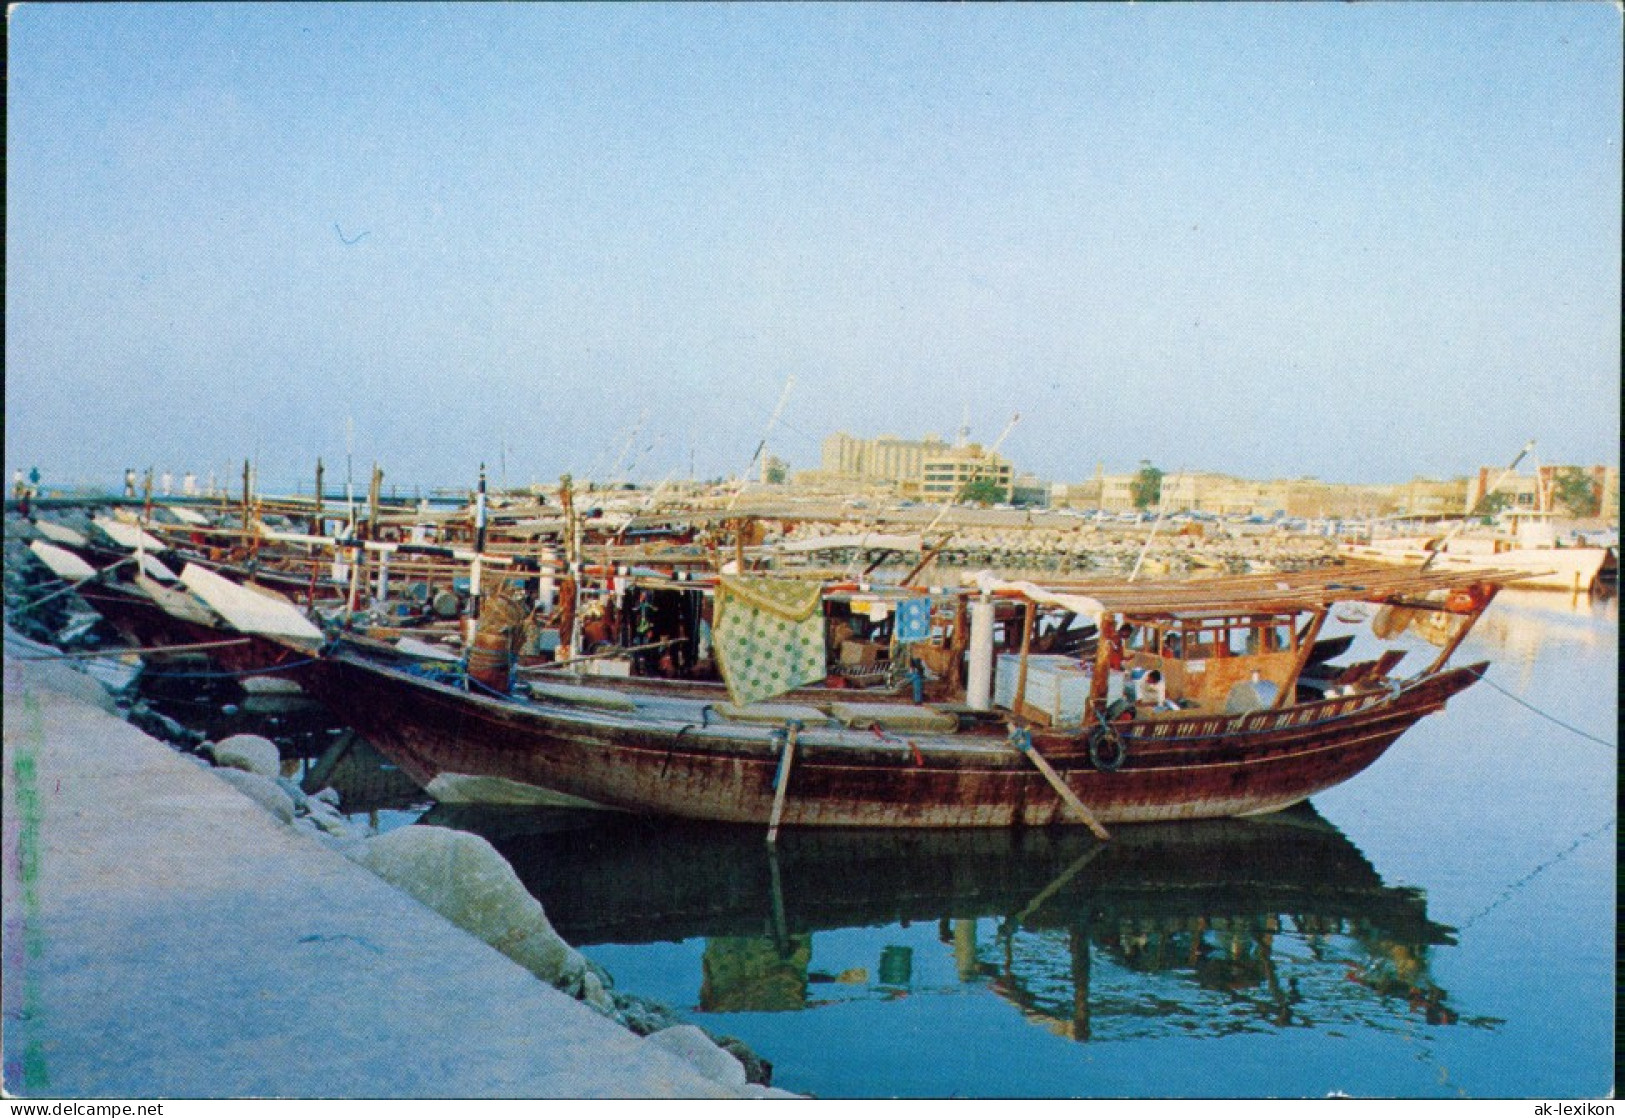 Kuwait-Stadt الكويت LAUNCH - Boote, Staat Kuwait الكويت 1968 - Koeweit